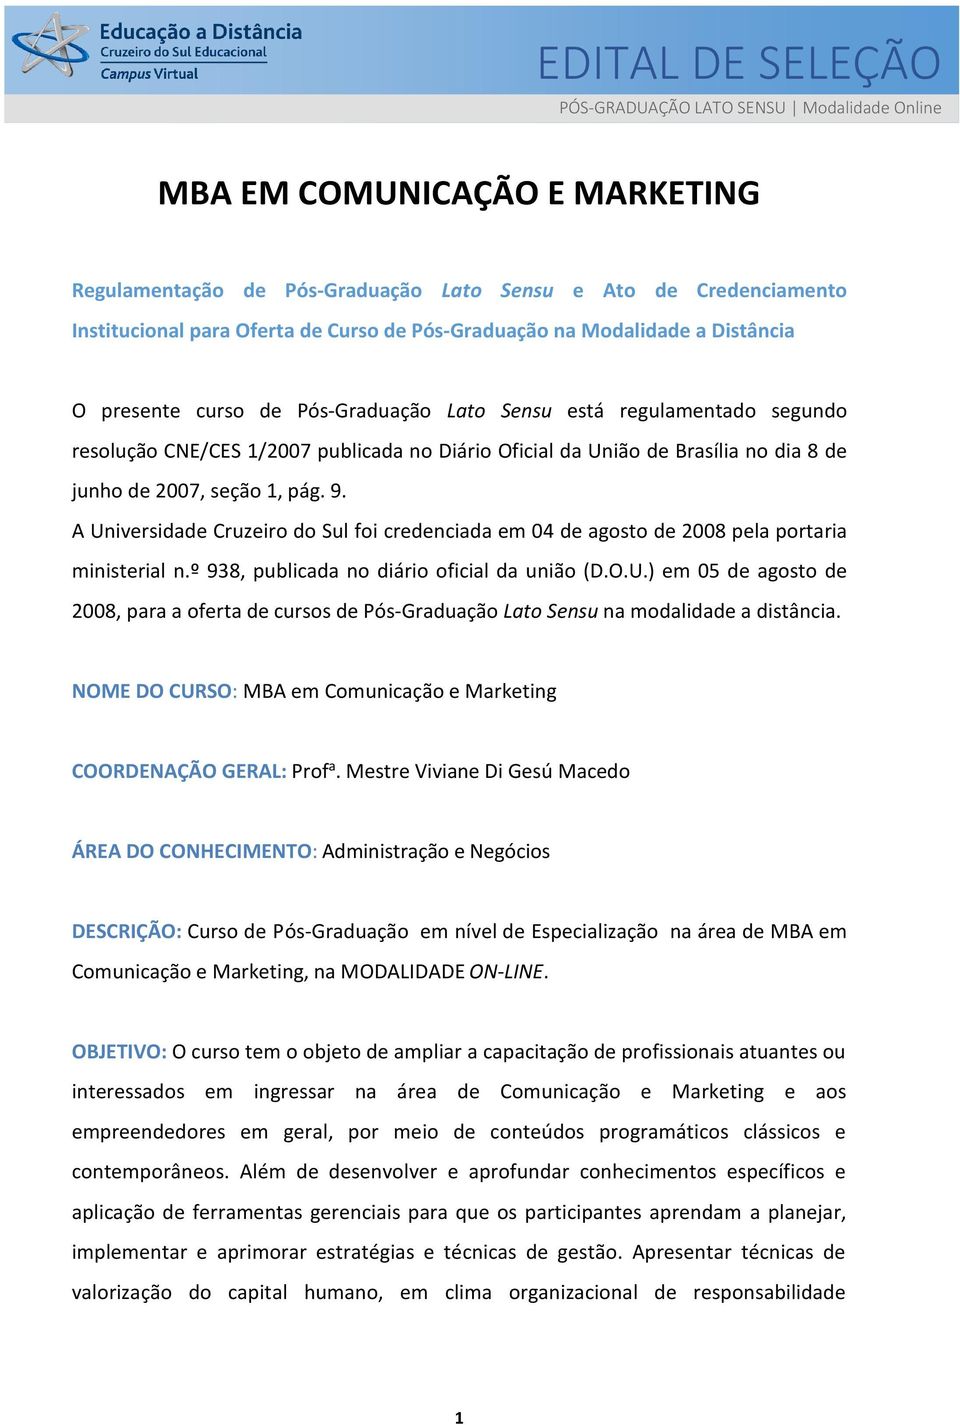 junho de 2007, seção 1, pág. 9. A Universidade Cruzeiro do Sul foi credenciada em 04 de agosto de 2008 pela portaria ministerial n.º 938, publicada no diário oficial da união (D.O.U.) em 05 de agosto de 2008, para a oferta de cursos de Pós-Graduação Lato Sensu na modalidade a distância.